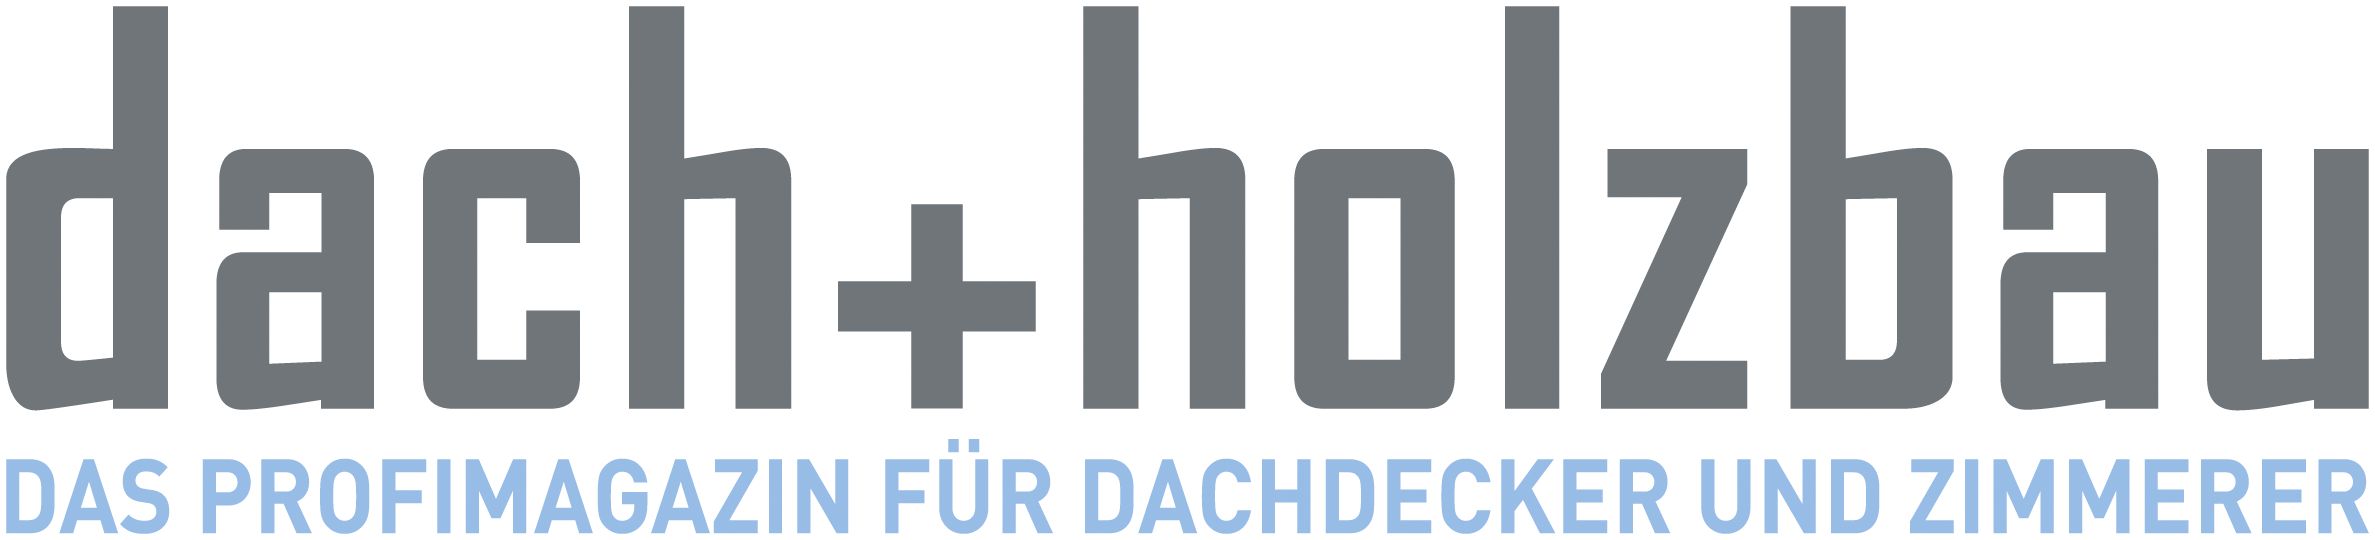 dach+holzbau_logo_2010_rgb.jpg